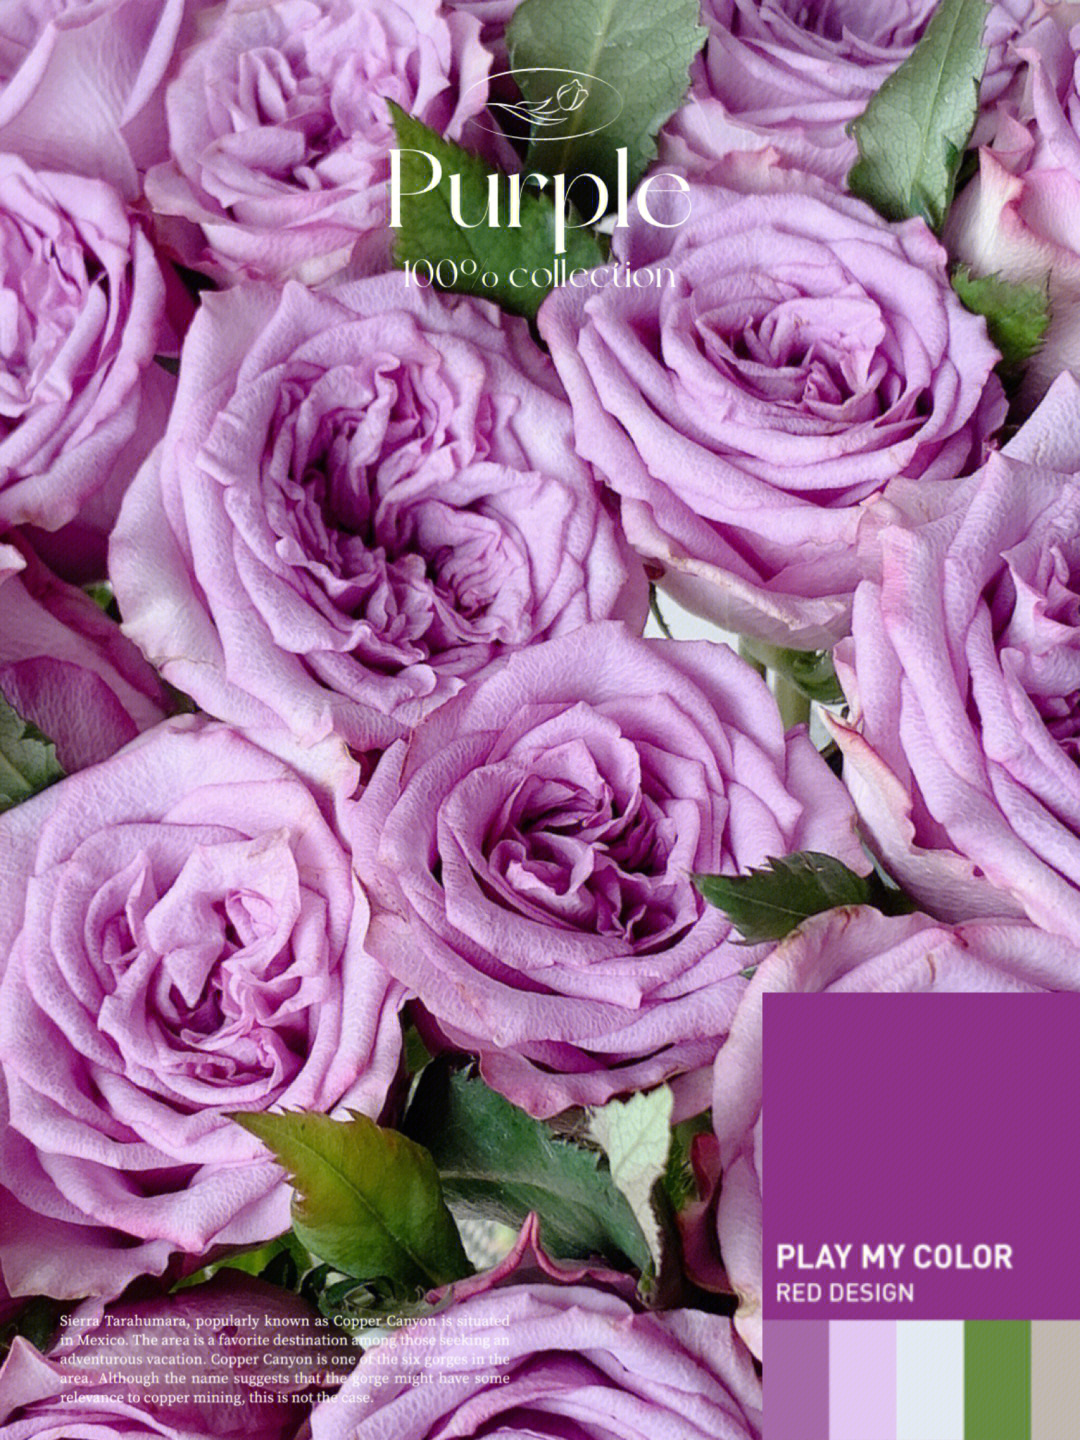 开放度一般,有轻微的香味,喜欢紫色系玫瑰的可以入手多洛塔玫瑰花语